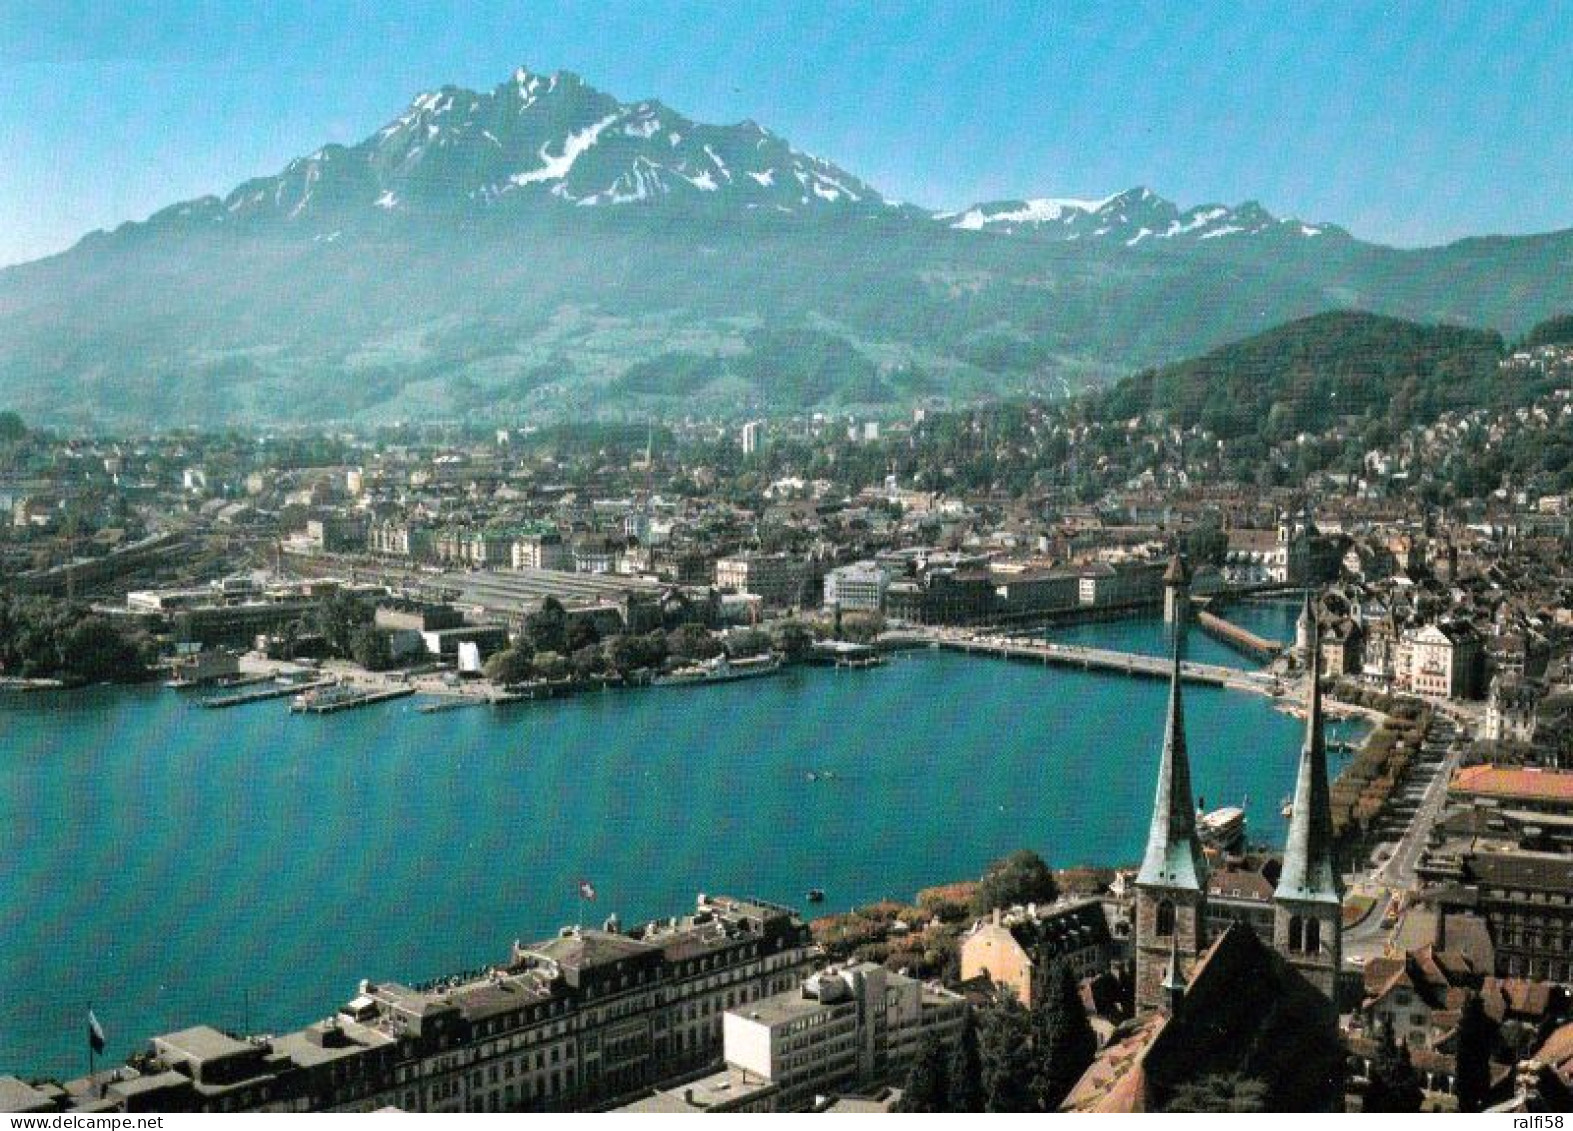 1 AK Schweiz * Blick Auf Luzern - Im Vordergrund Die Hofkirche - Luftbildaufnahme * - Lucerna